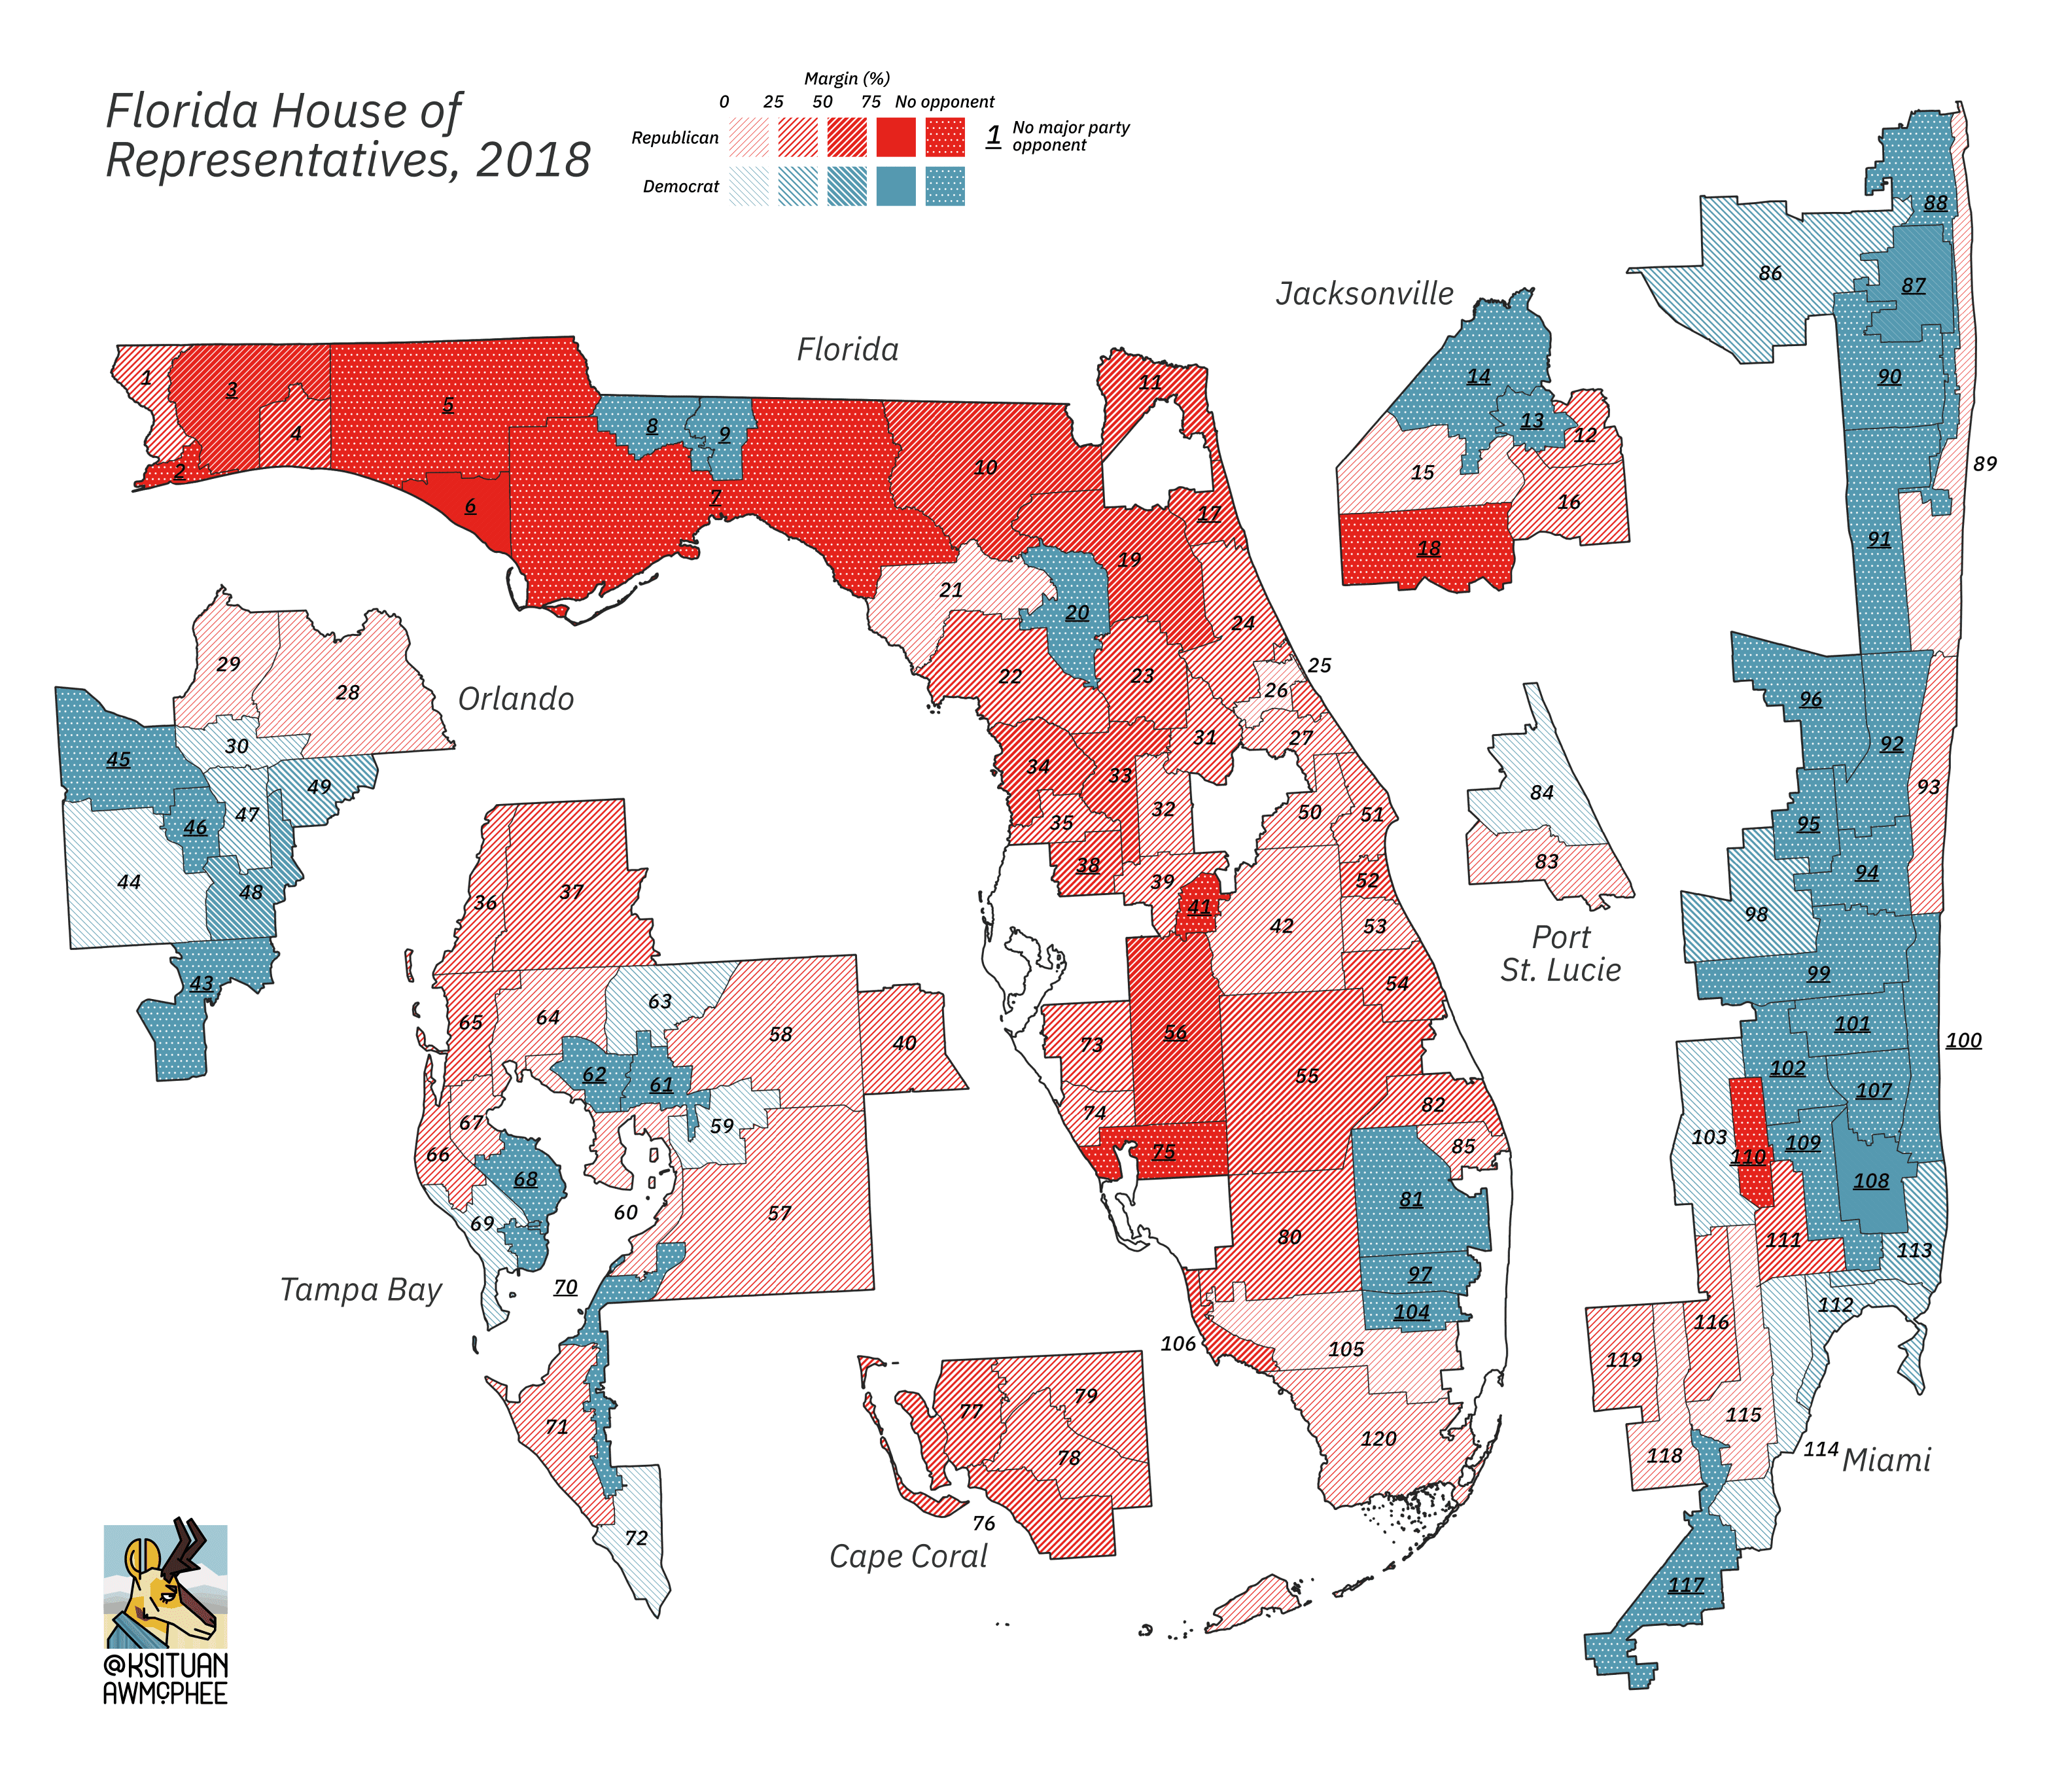 A political map of Florida.